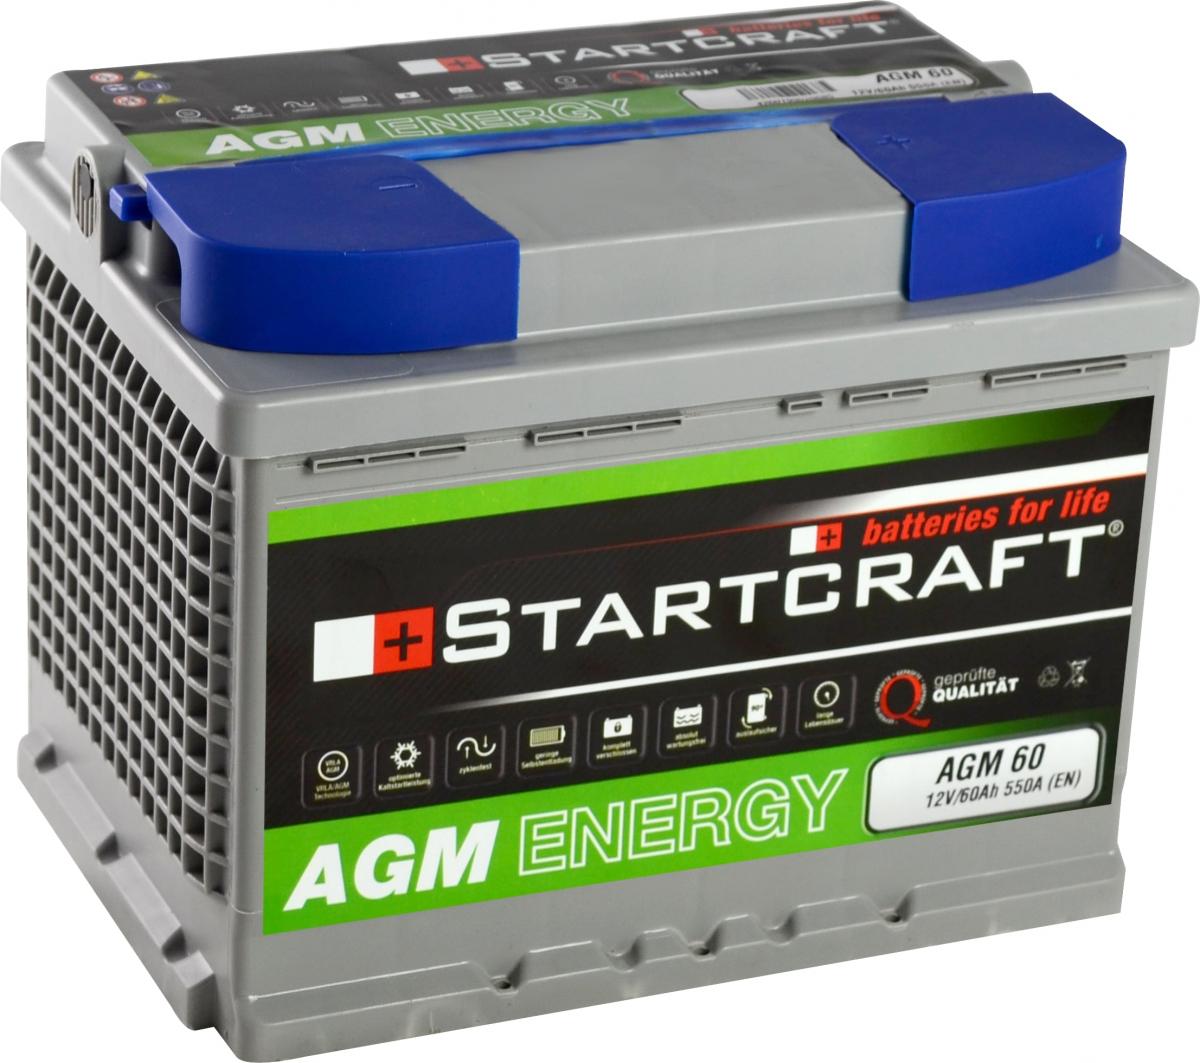 Batterie AGM Energy